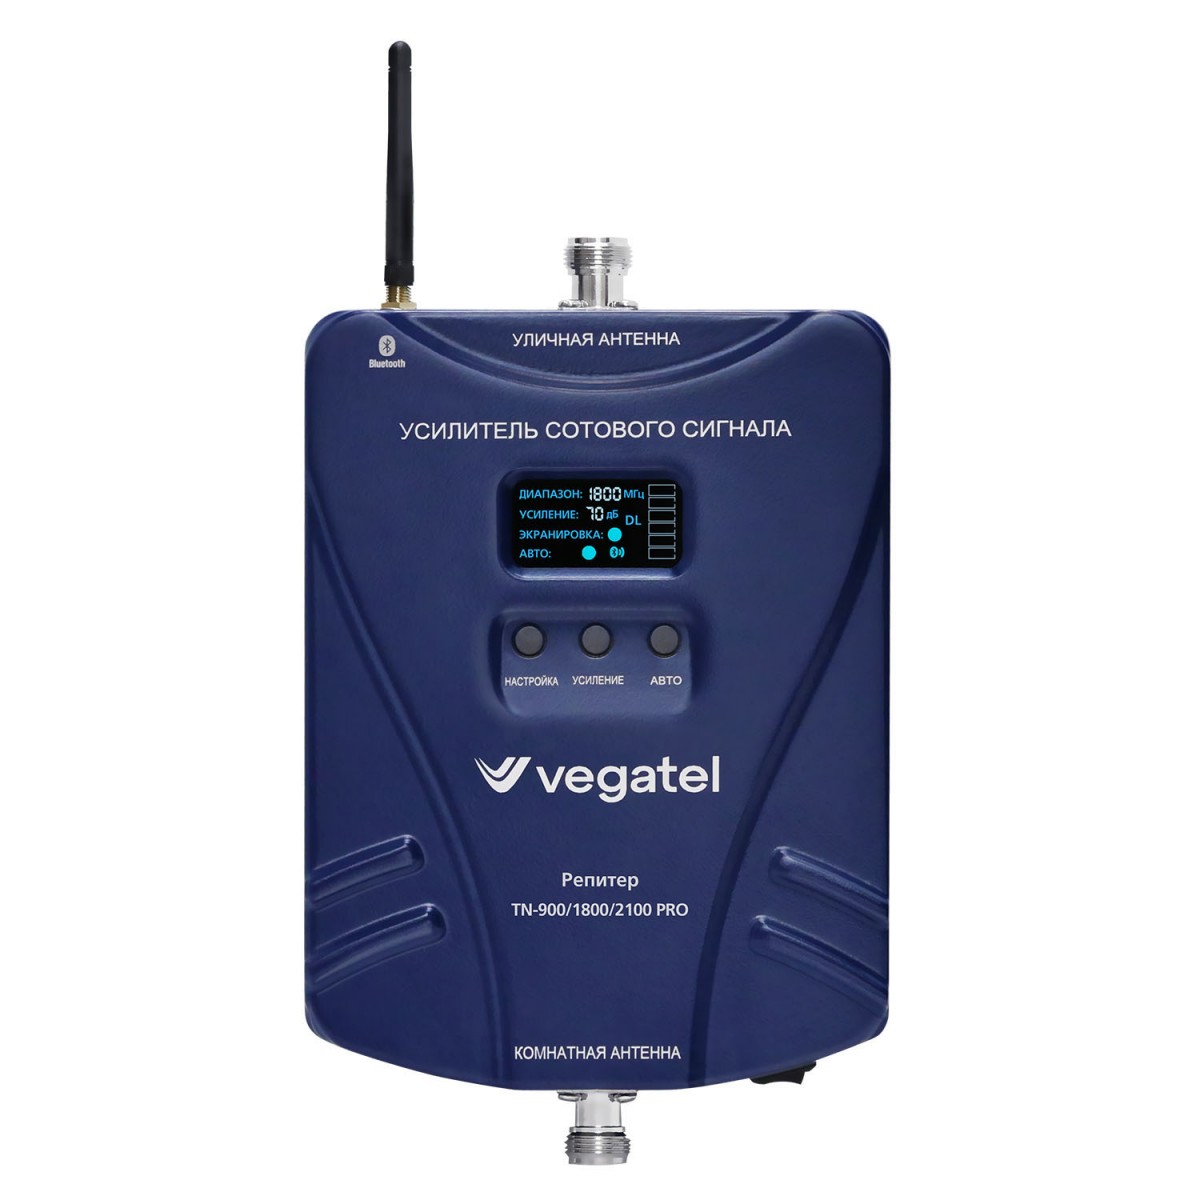 Детальное изображение товара "Комплект усиления сотовой связи Vegatel TN-900/1800/2100 PRO" из каталога оборудования Антенна76